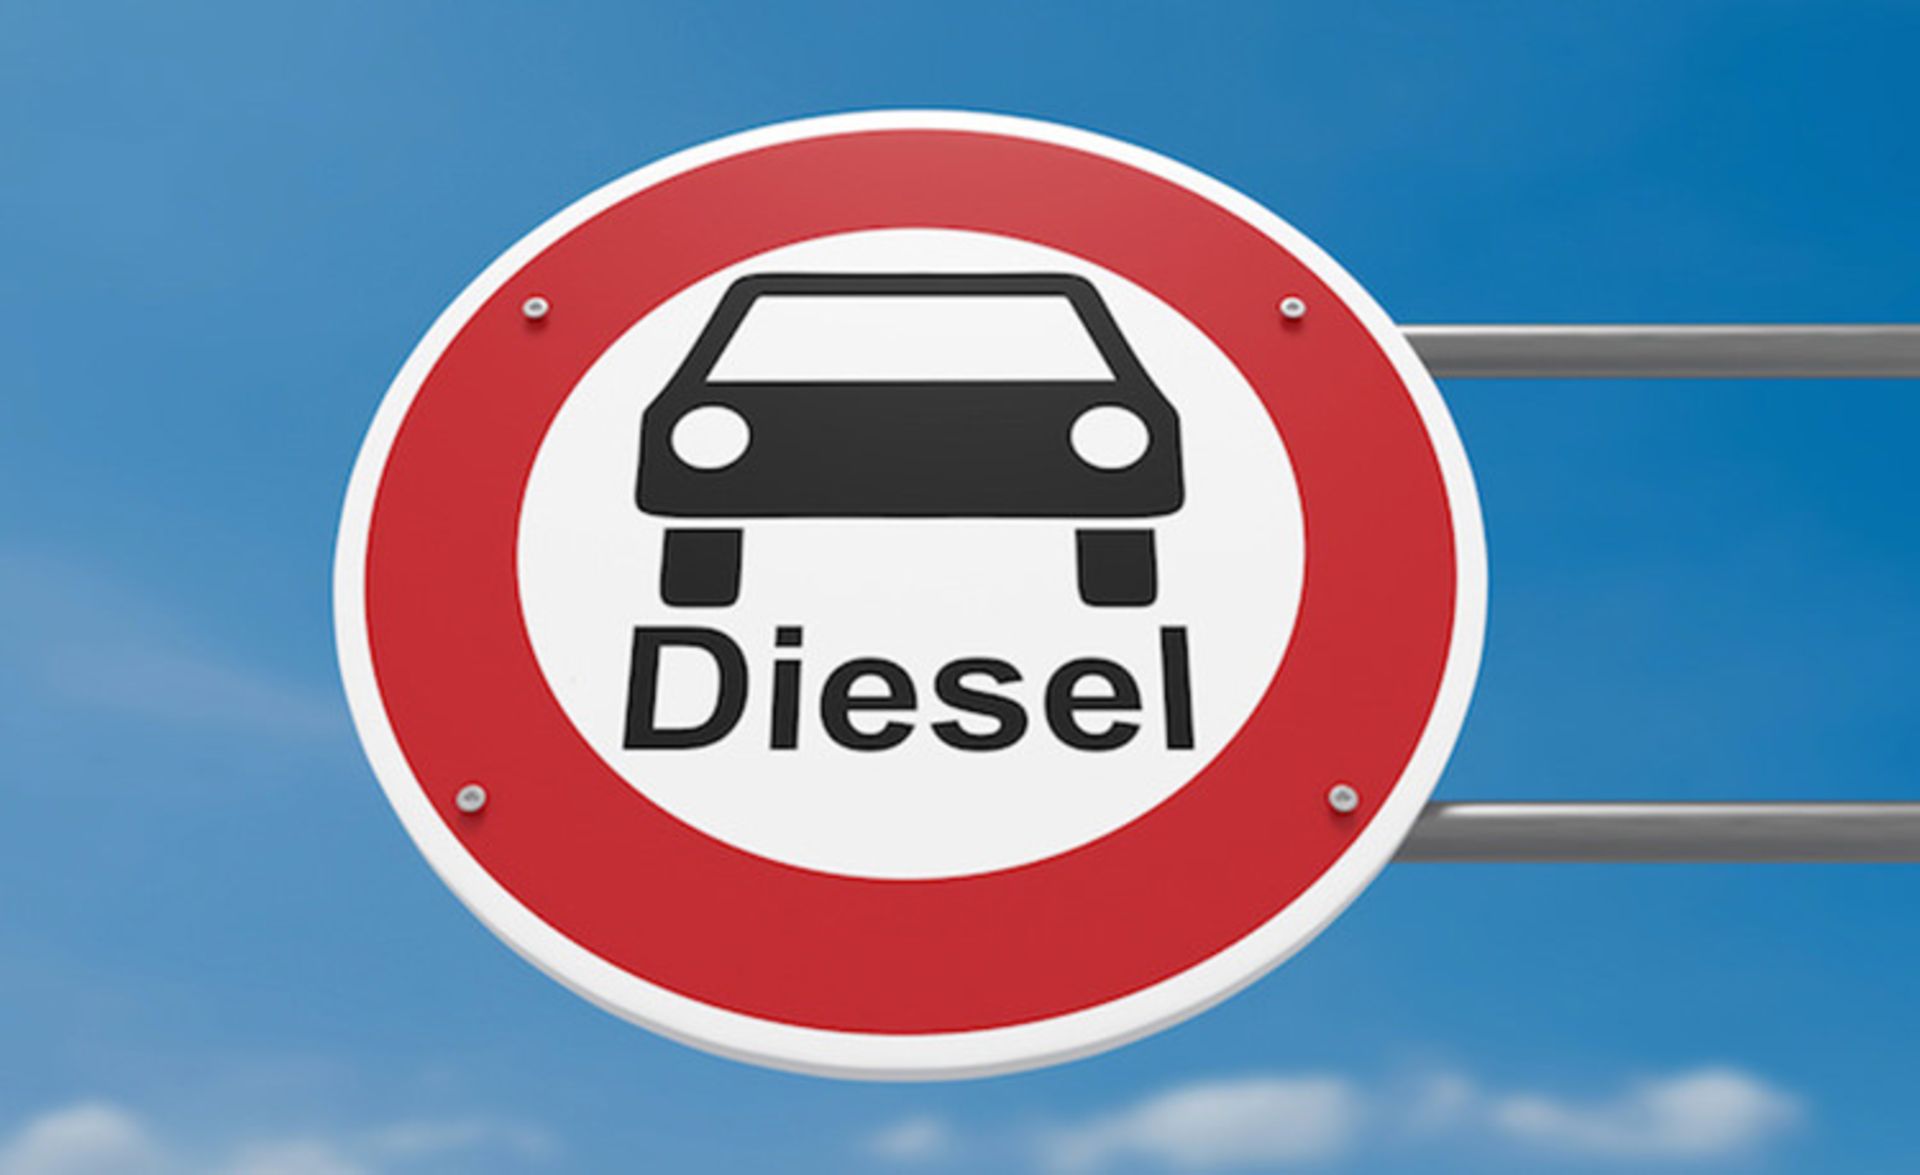 خودروی دیزل / diesel car